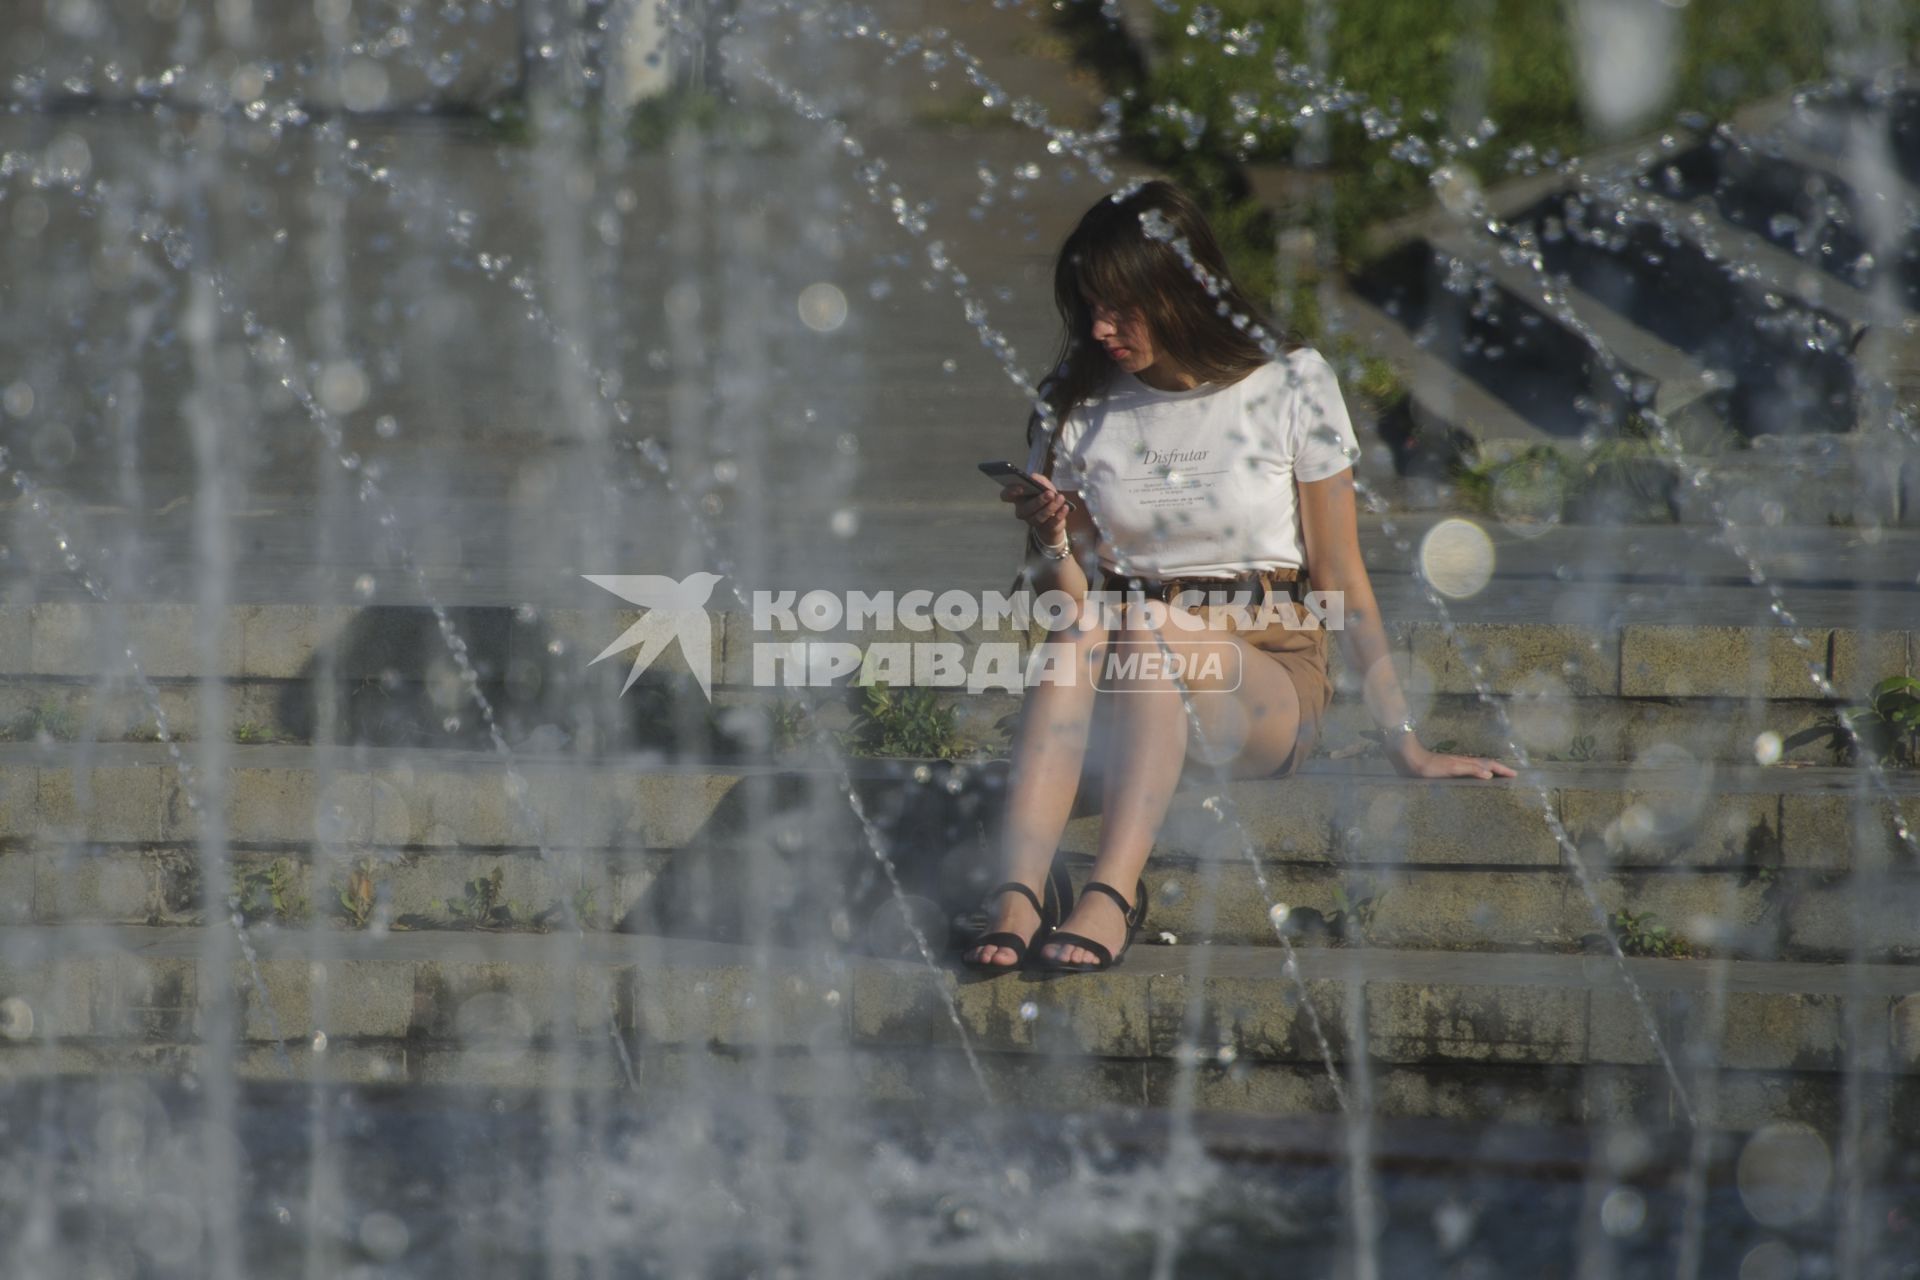 Екатеринбург. Девушка у фонтана на Октябрьской площади во время летней жары